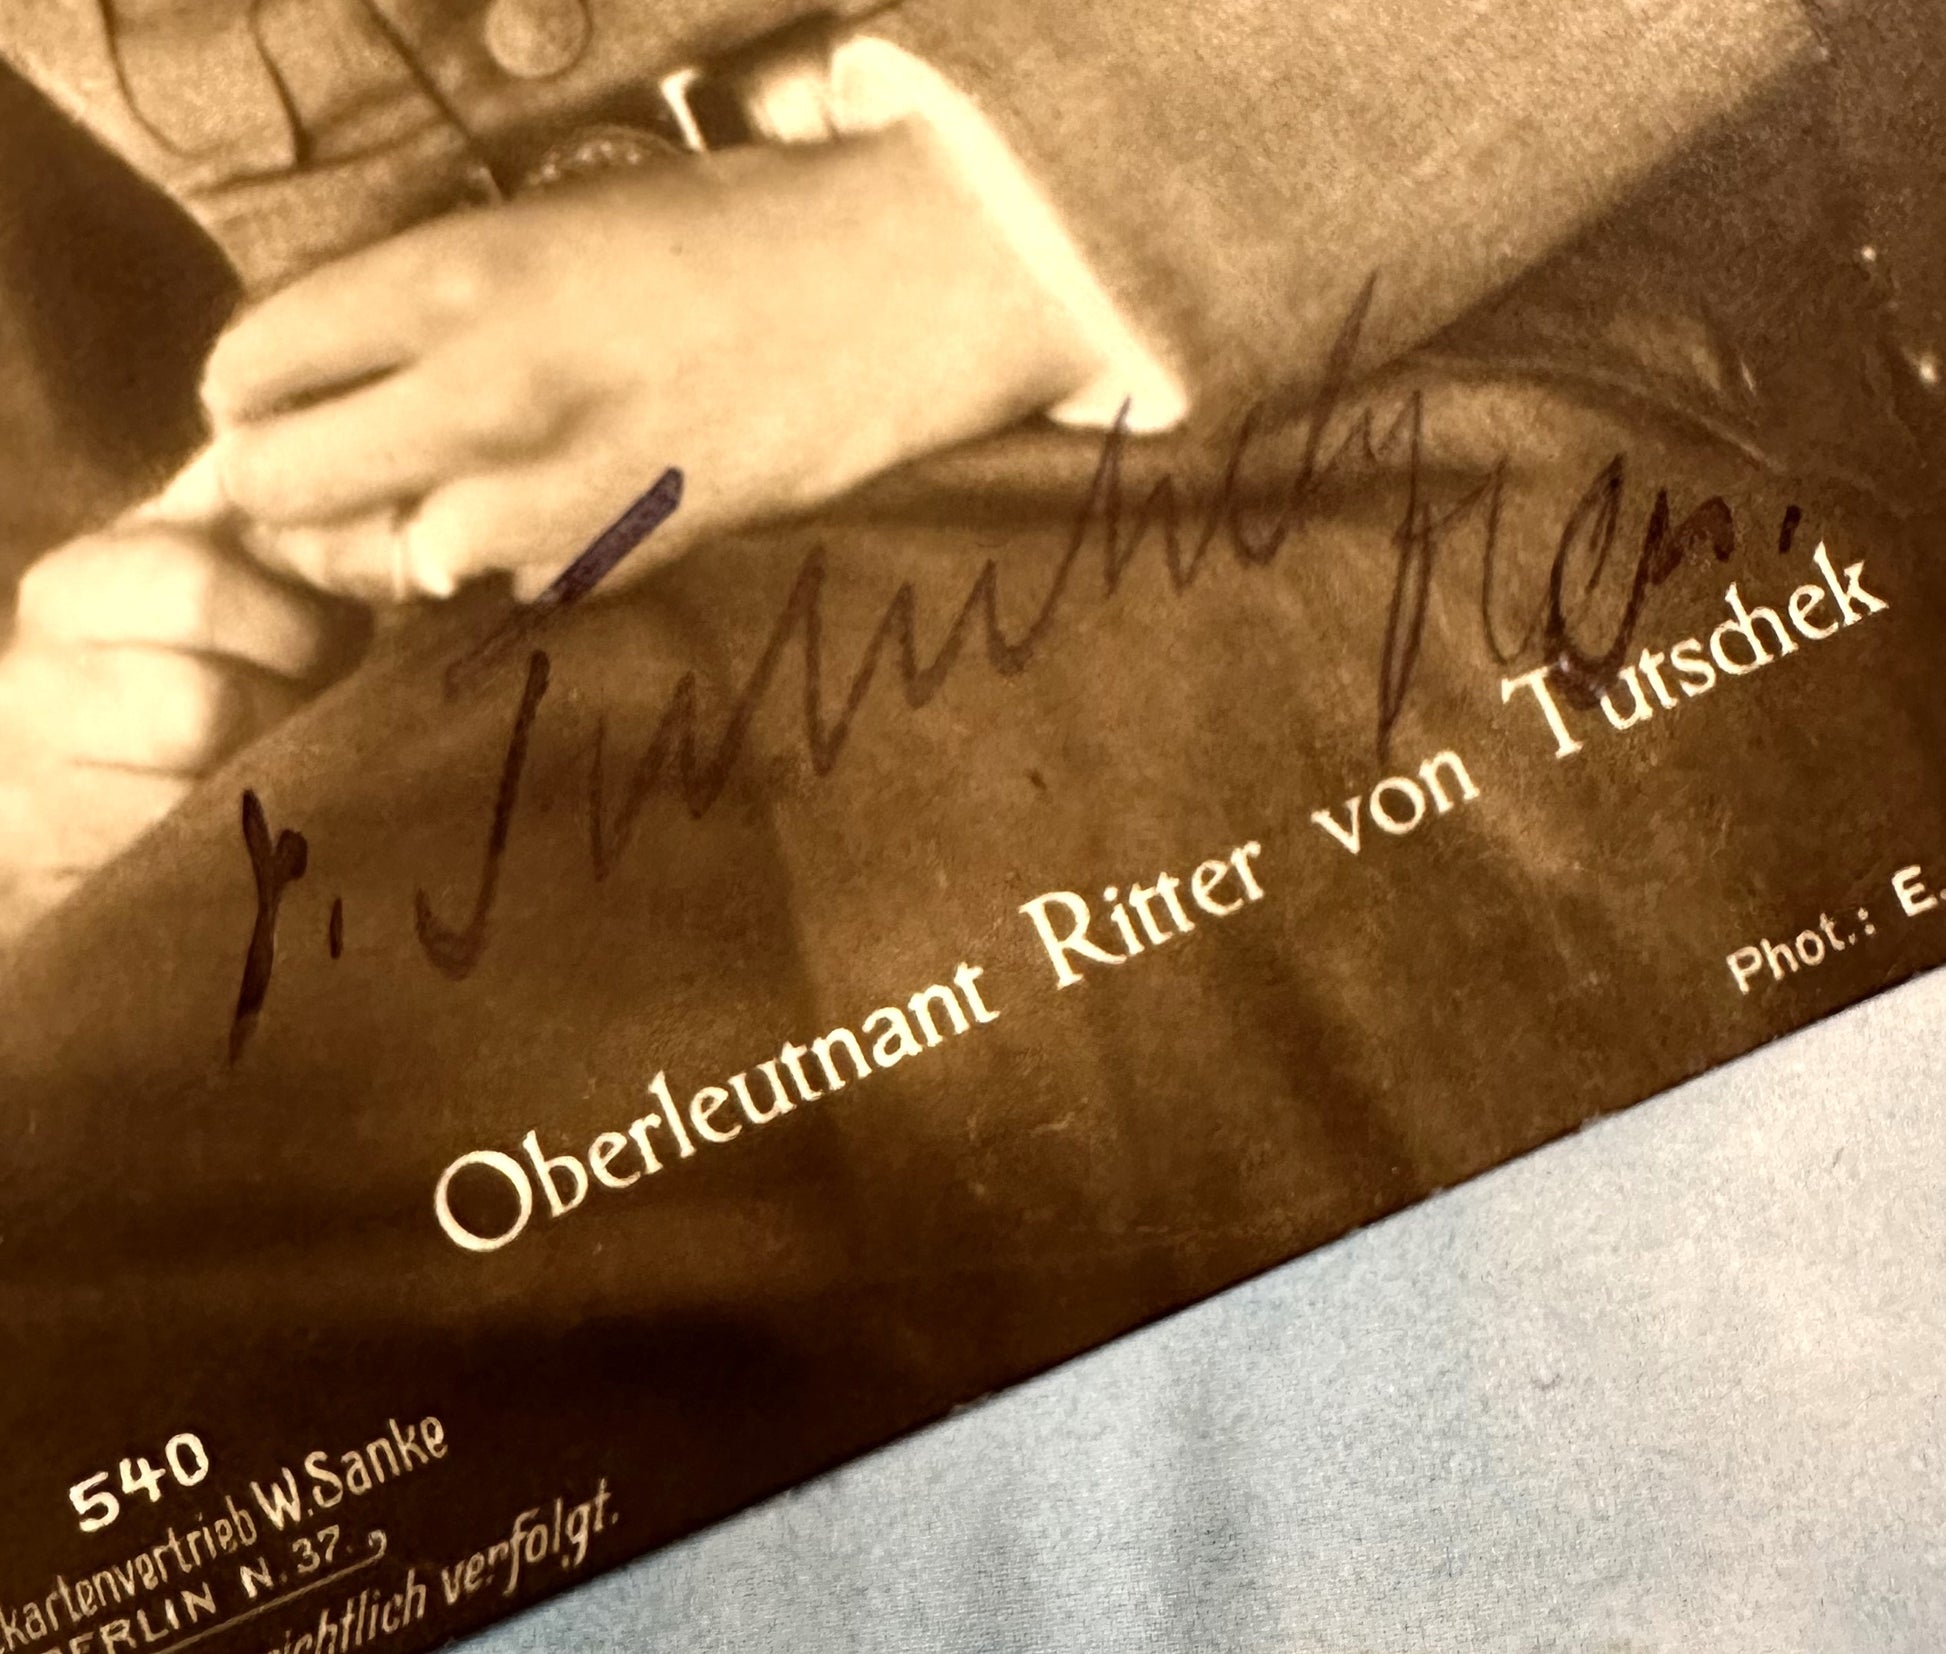 Autographed Sanke Card Nr 540 - Oberleutnant Adolf Ritter von Tutschek - Derrittmeister Militaria Group